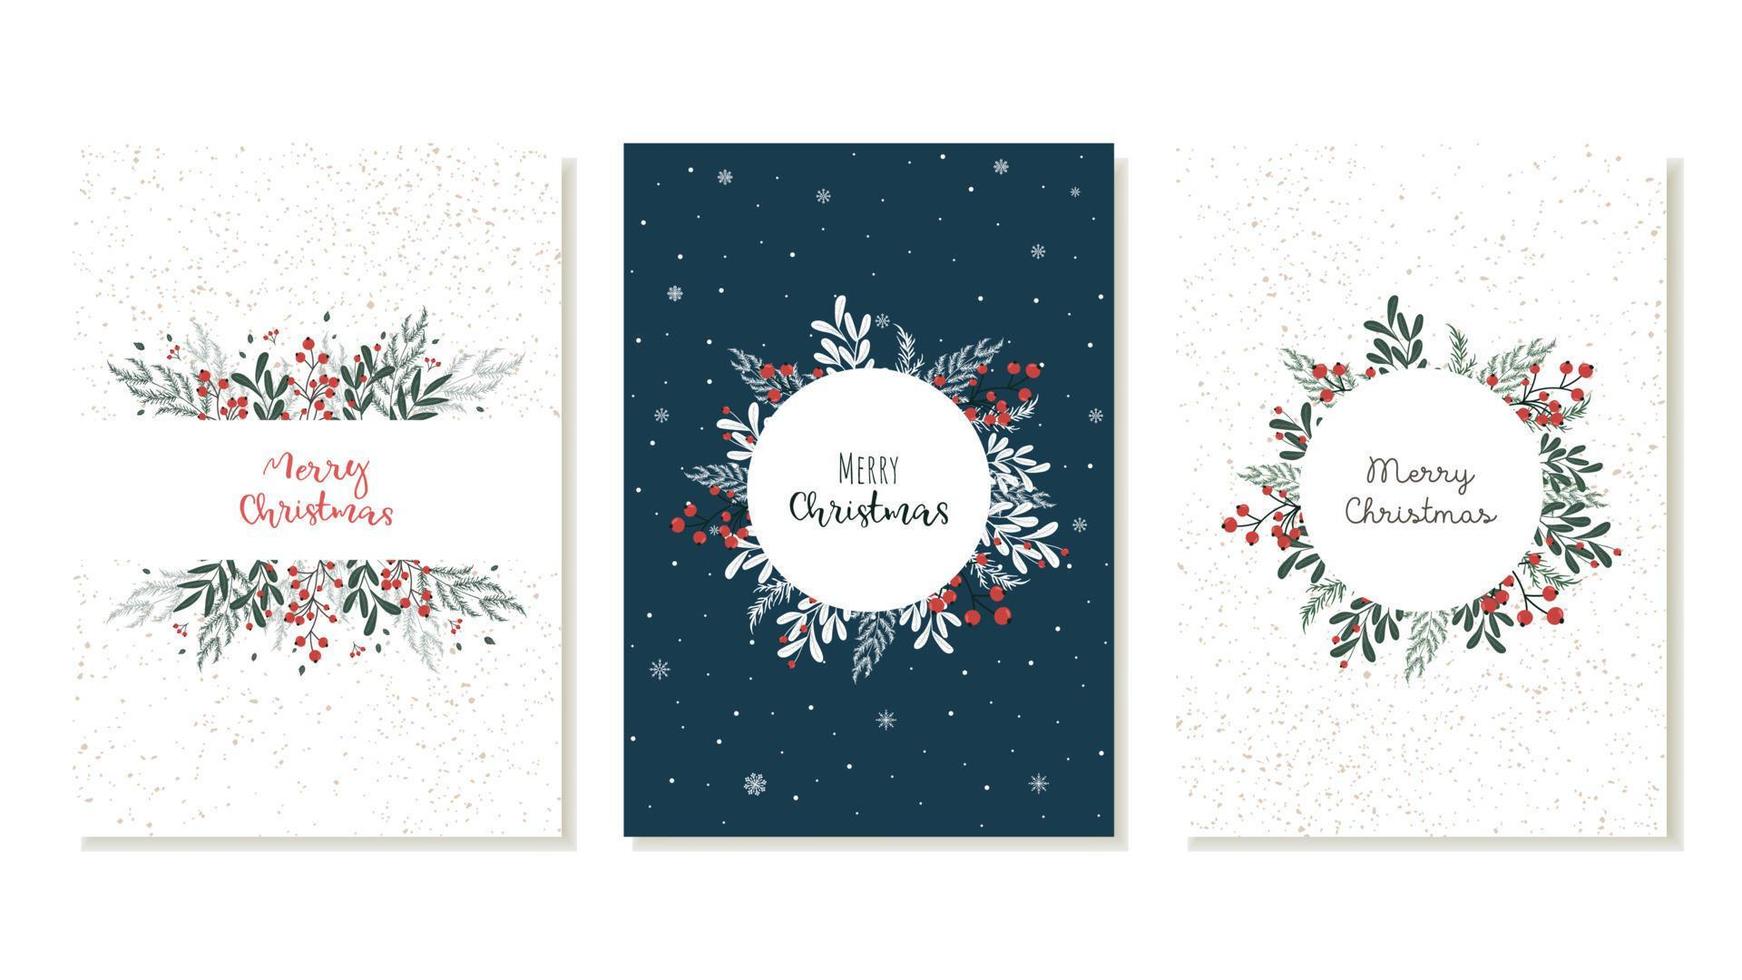 un conjunto de tarjetas navideñas para saludar el año nuevo con una decoración vegetal de árboles de navidad, ramas con bayas rojas. vector